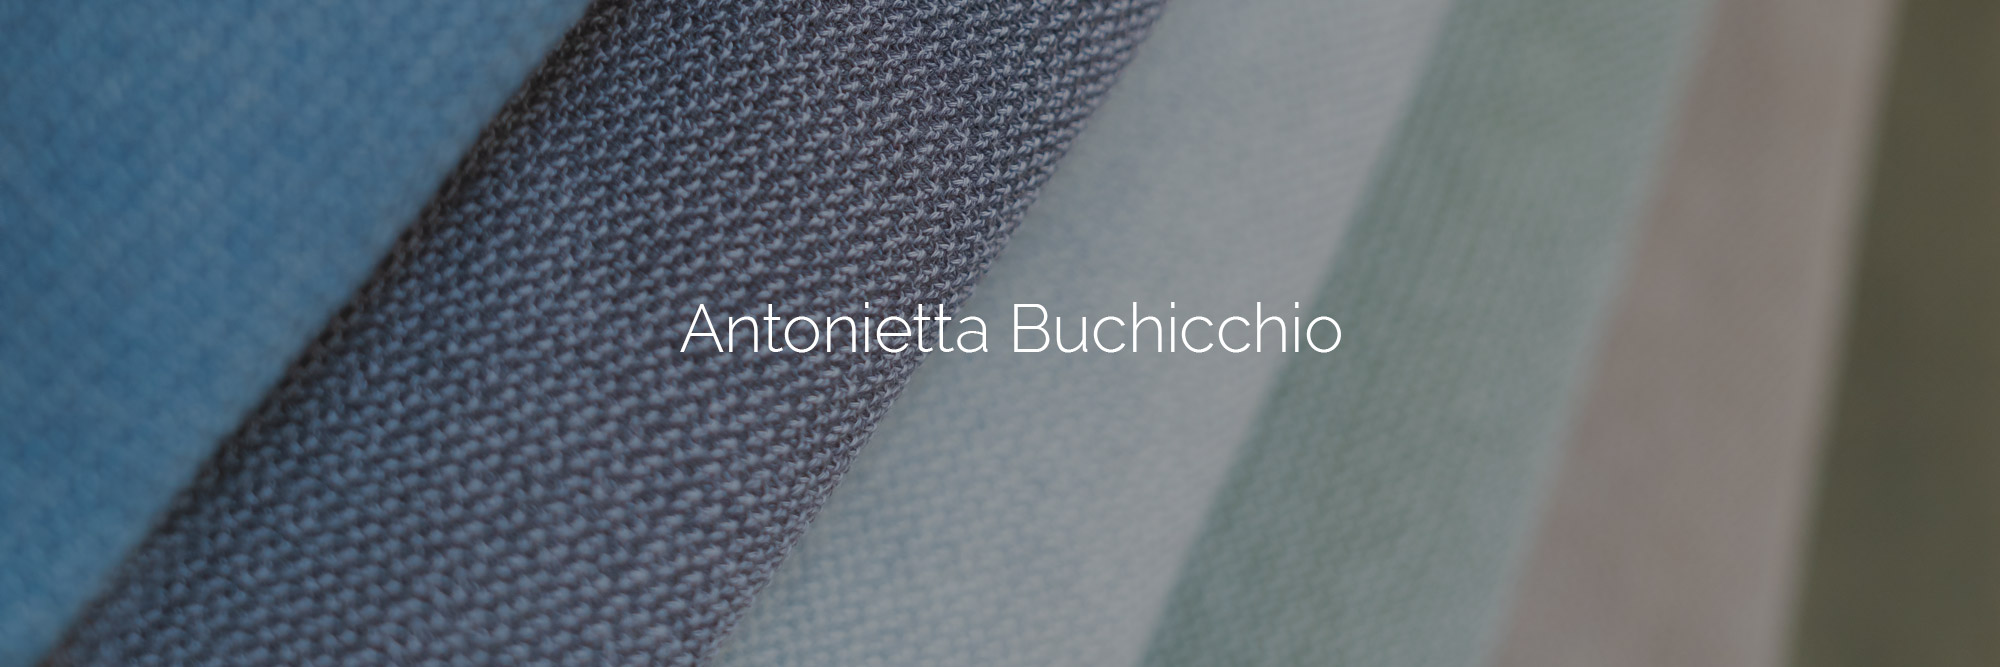 Antonietta Buchicchio - servizio fotografico editoriale